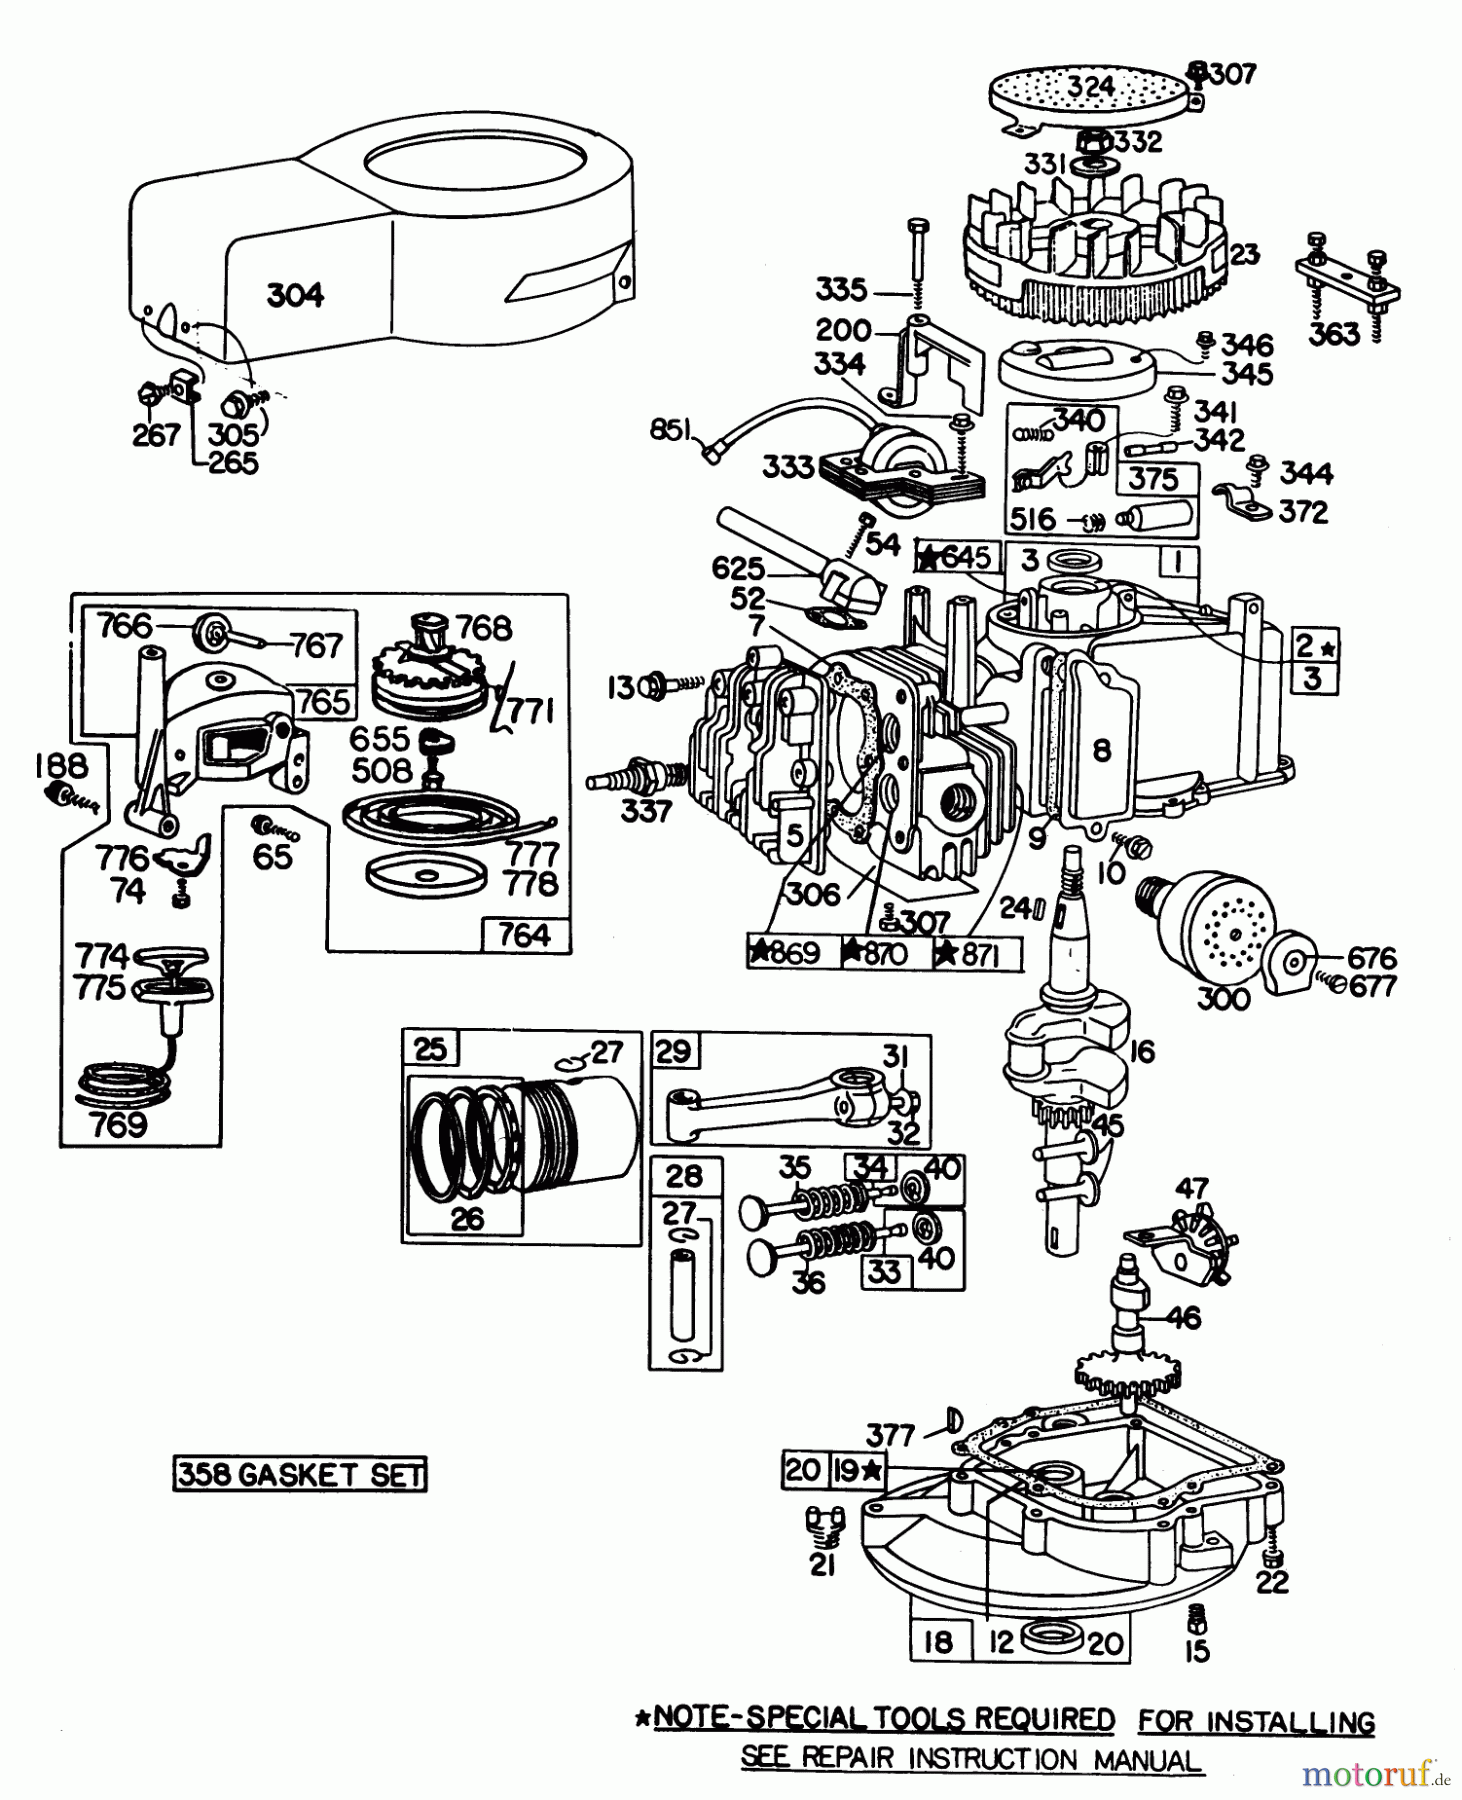  Toro Neu Mowers, Walk-Behind Seite 1 20798 - Toro Lawnmower, 1979 (9000001-9999999) ENGINE BRIGGS & STRATTON MODEL NO. 92908-1934-02